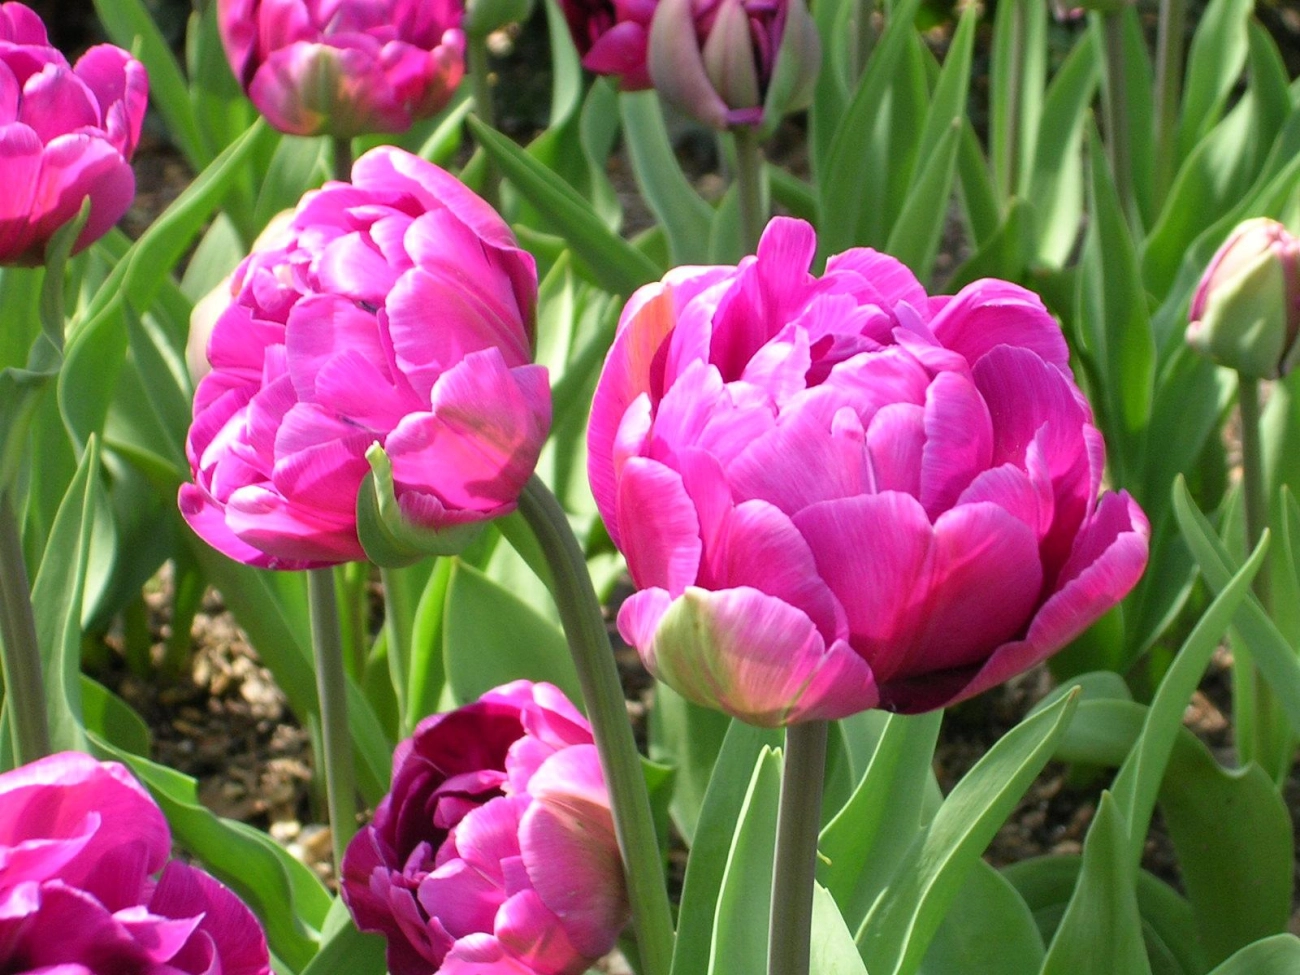 Hoa tulip - nguồn gốc đặc điểm và ý nghĩa ẩn giấu đằng sau mỗi sắc hoa - 19